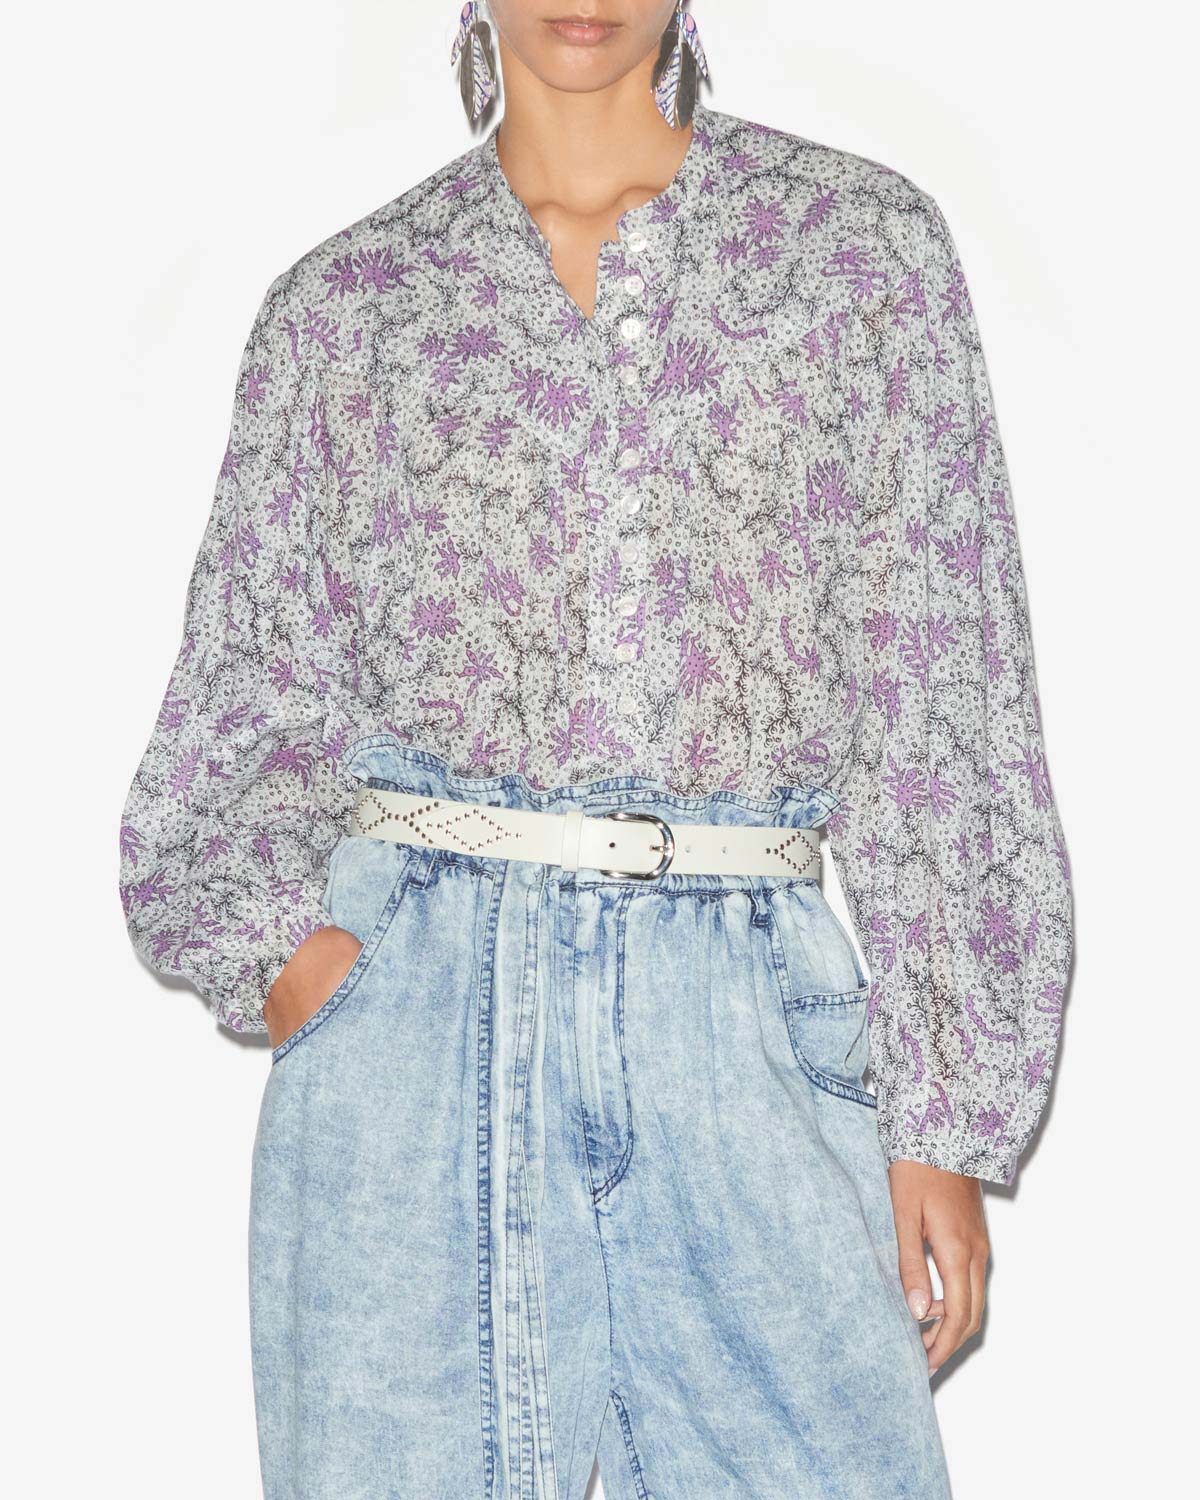 Salika blouse Woman Ecru-lilac 5